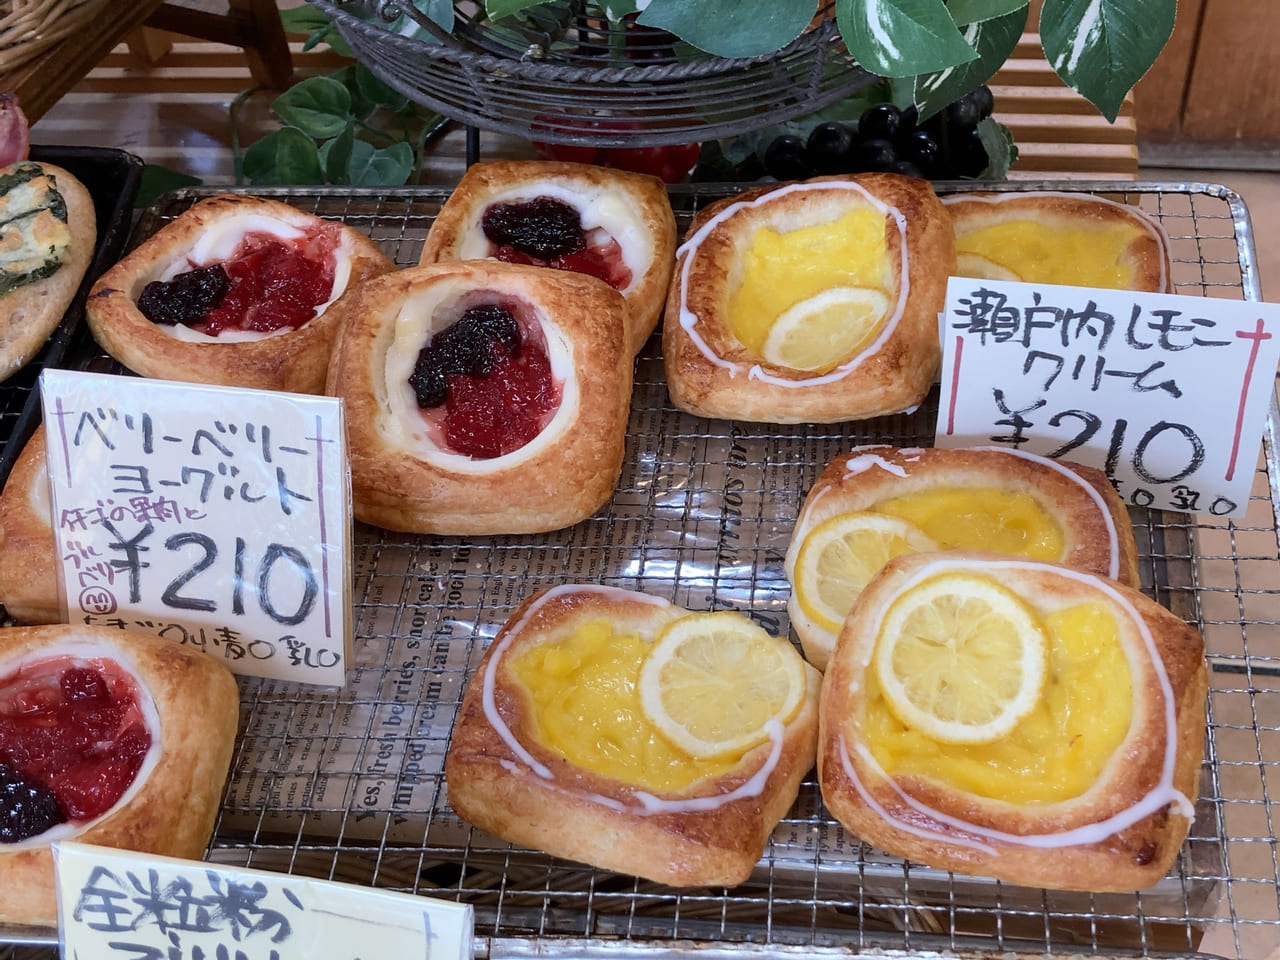 メディアでも取り上げられた自然派で人気の「フレンドパン」は、JR千早駅から徒歩で約9分ほどの距離にあります。創業1973年、40年以上続くお店です。